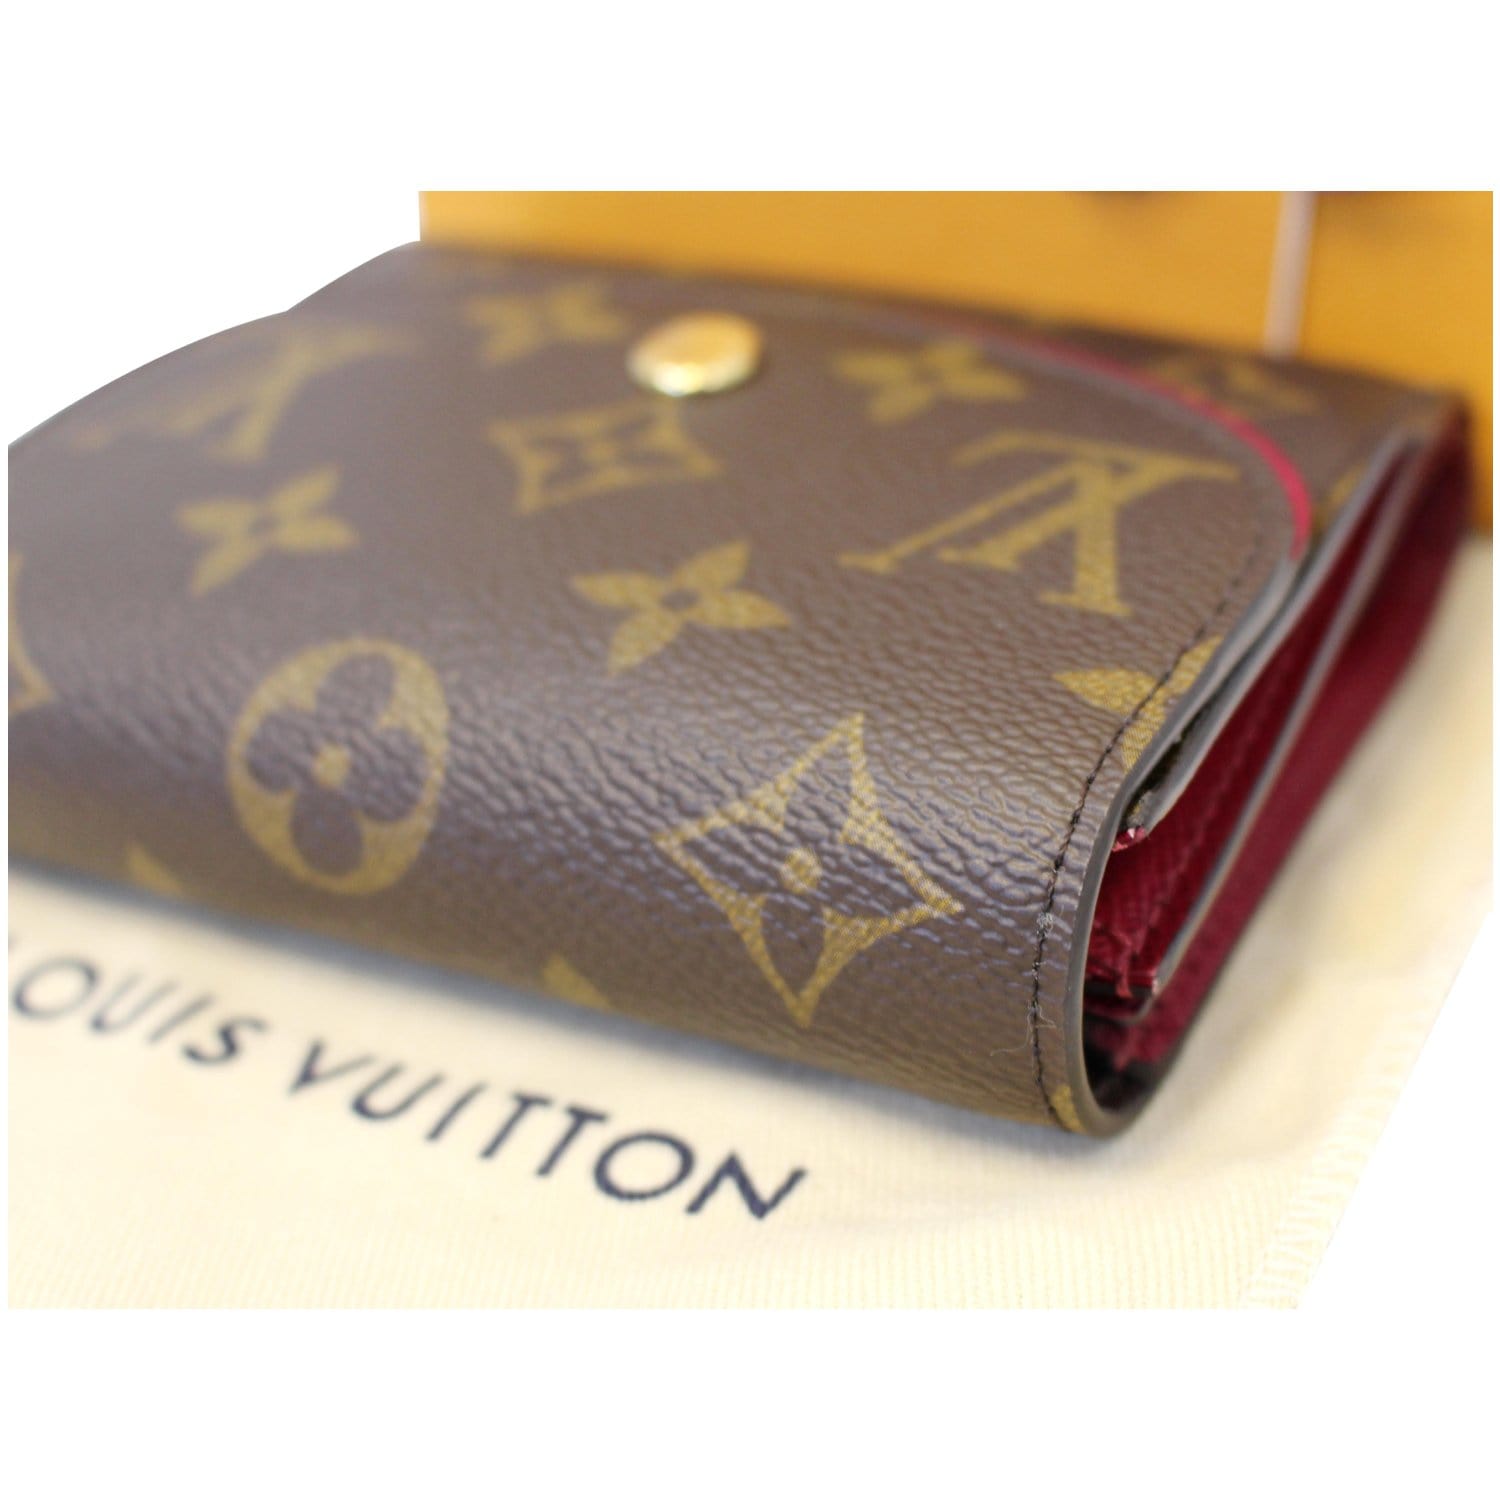 Louis Vuitton Portefeuille Ariane – The Brand Collector